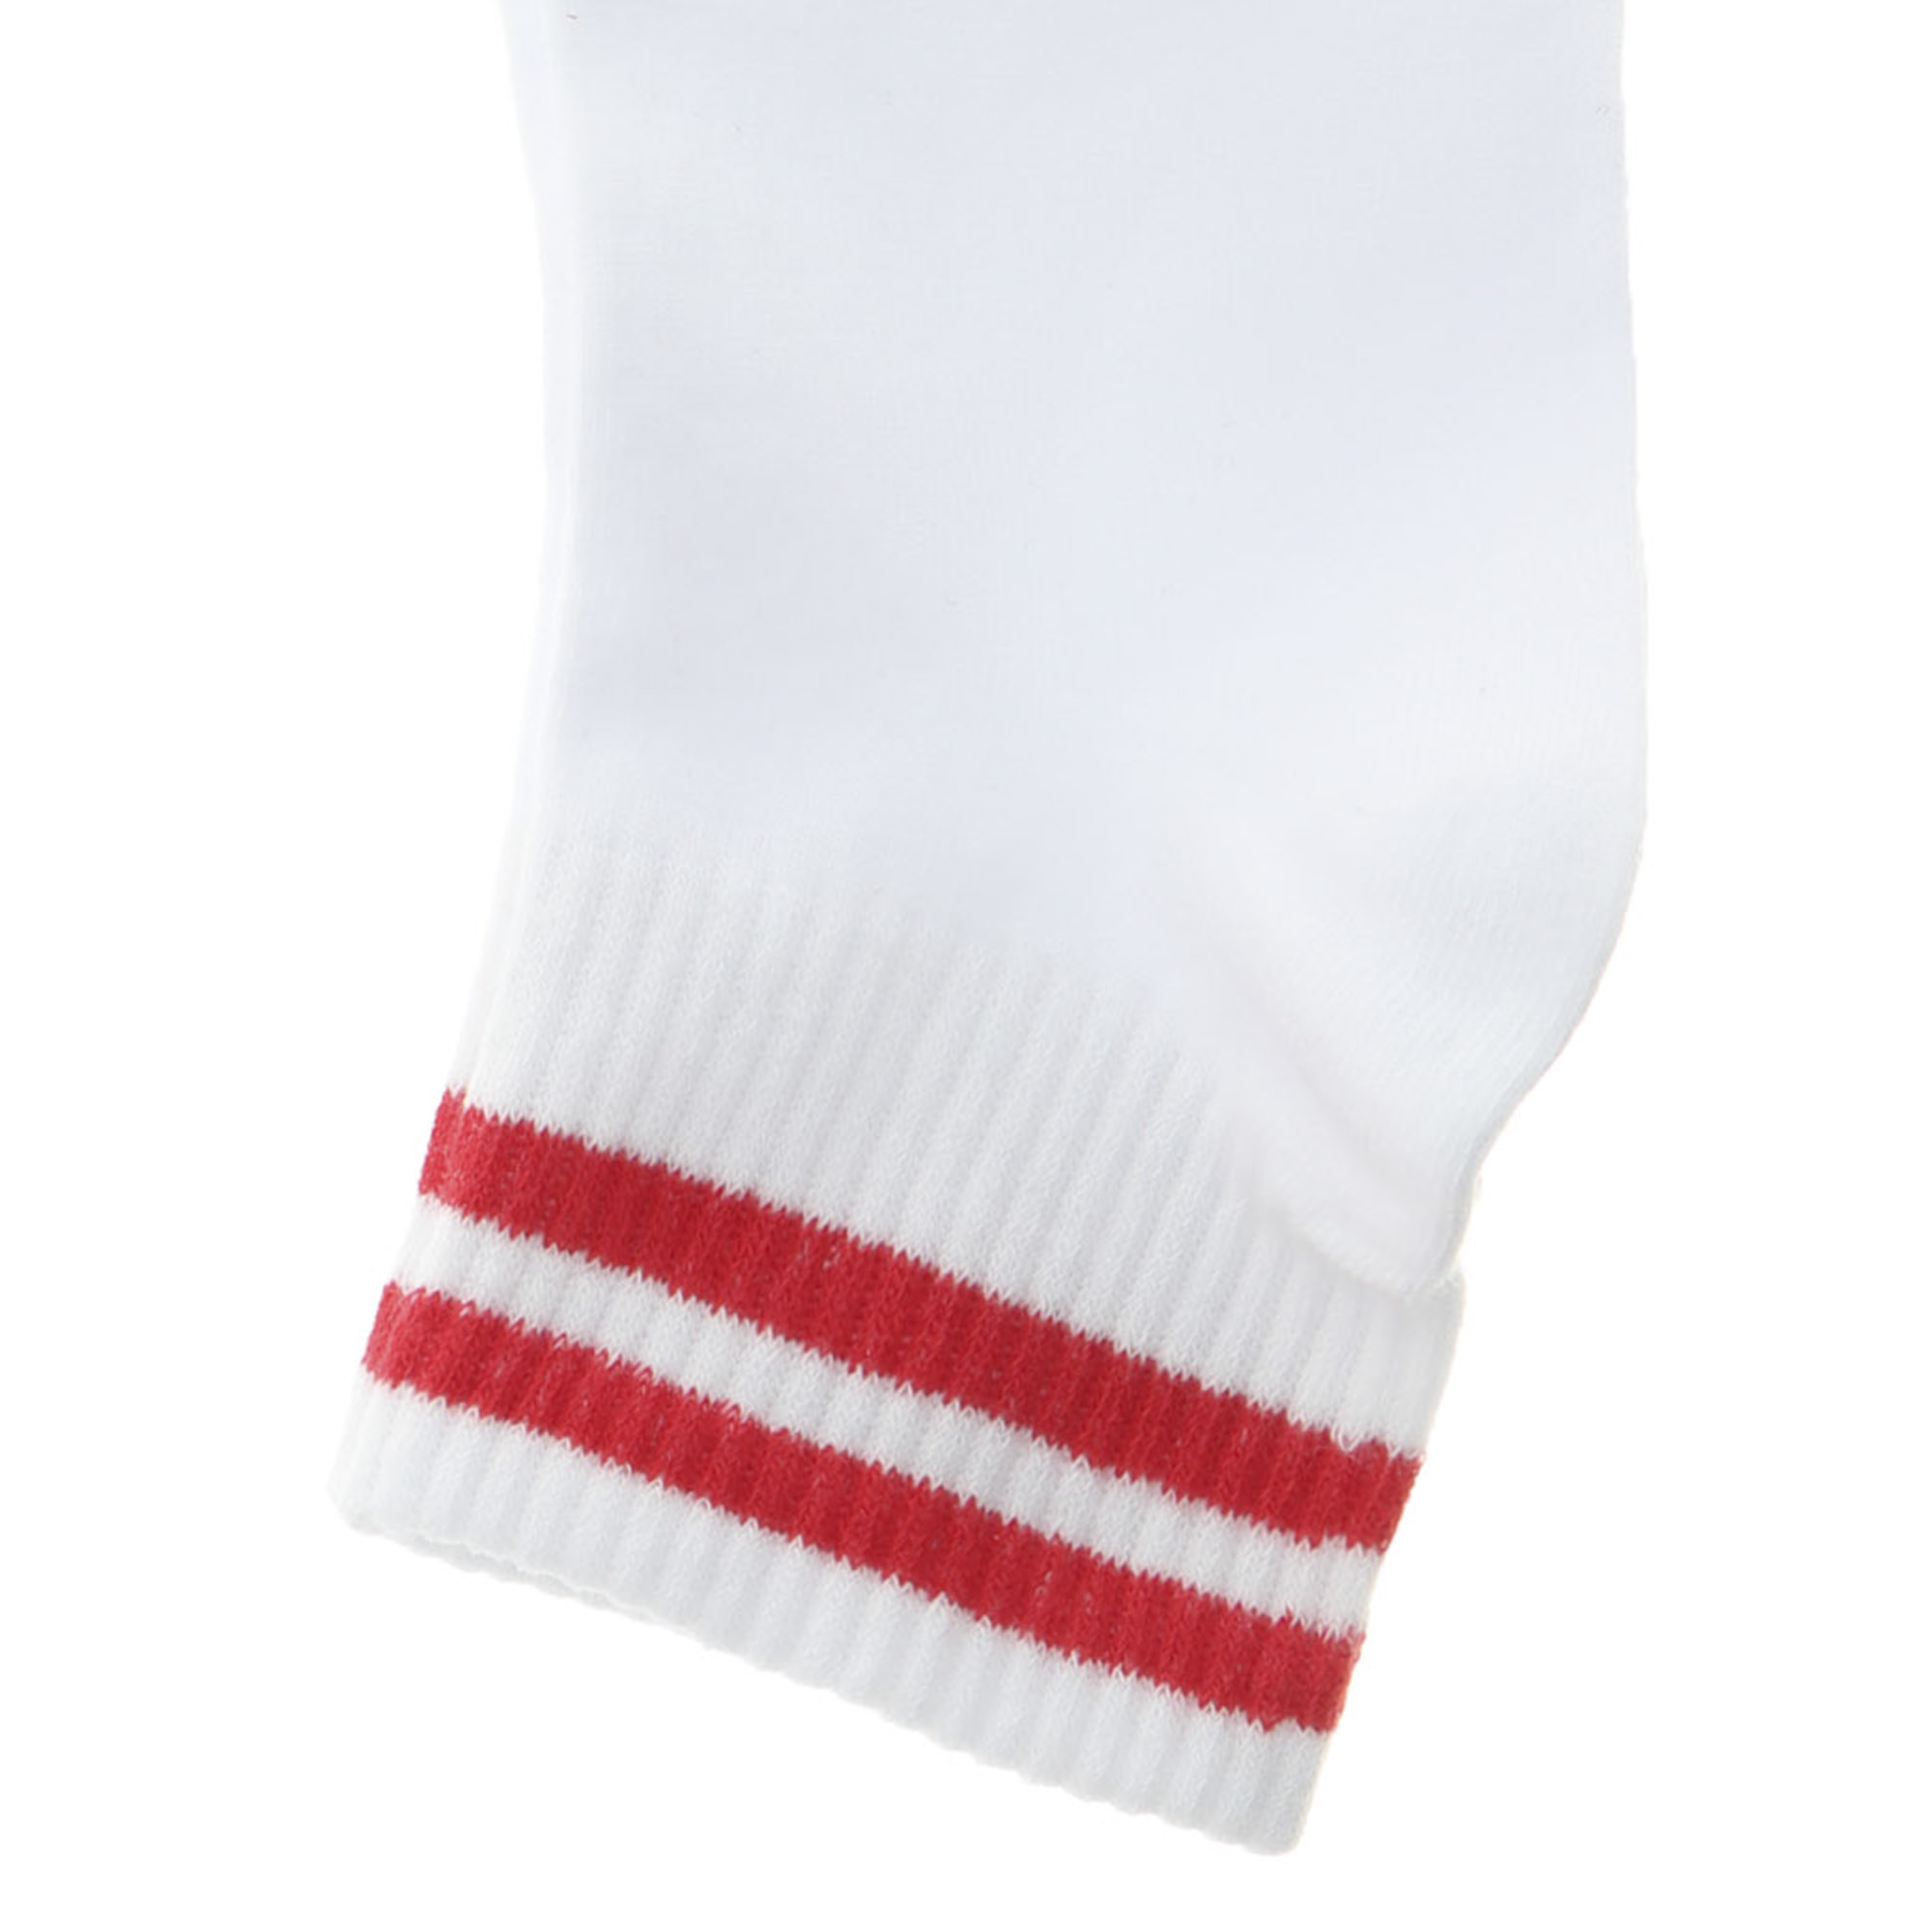 фото Носки женские однотонные укороченные lucky socks белые 1 пара 23-25